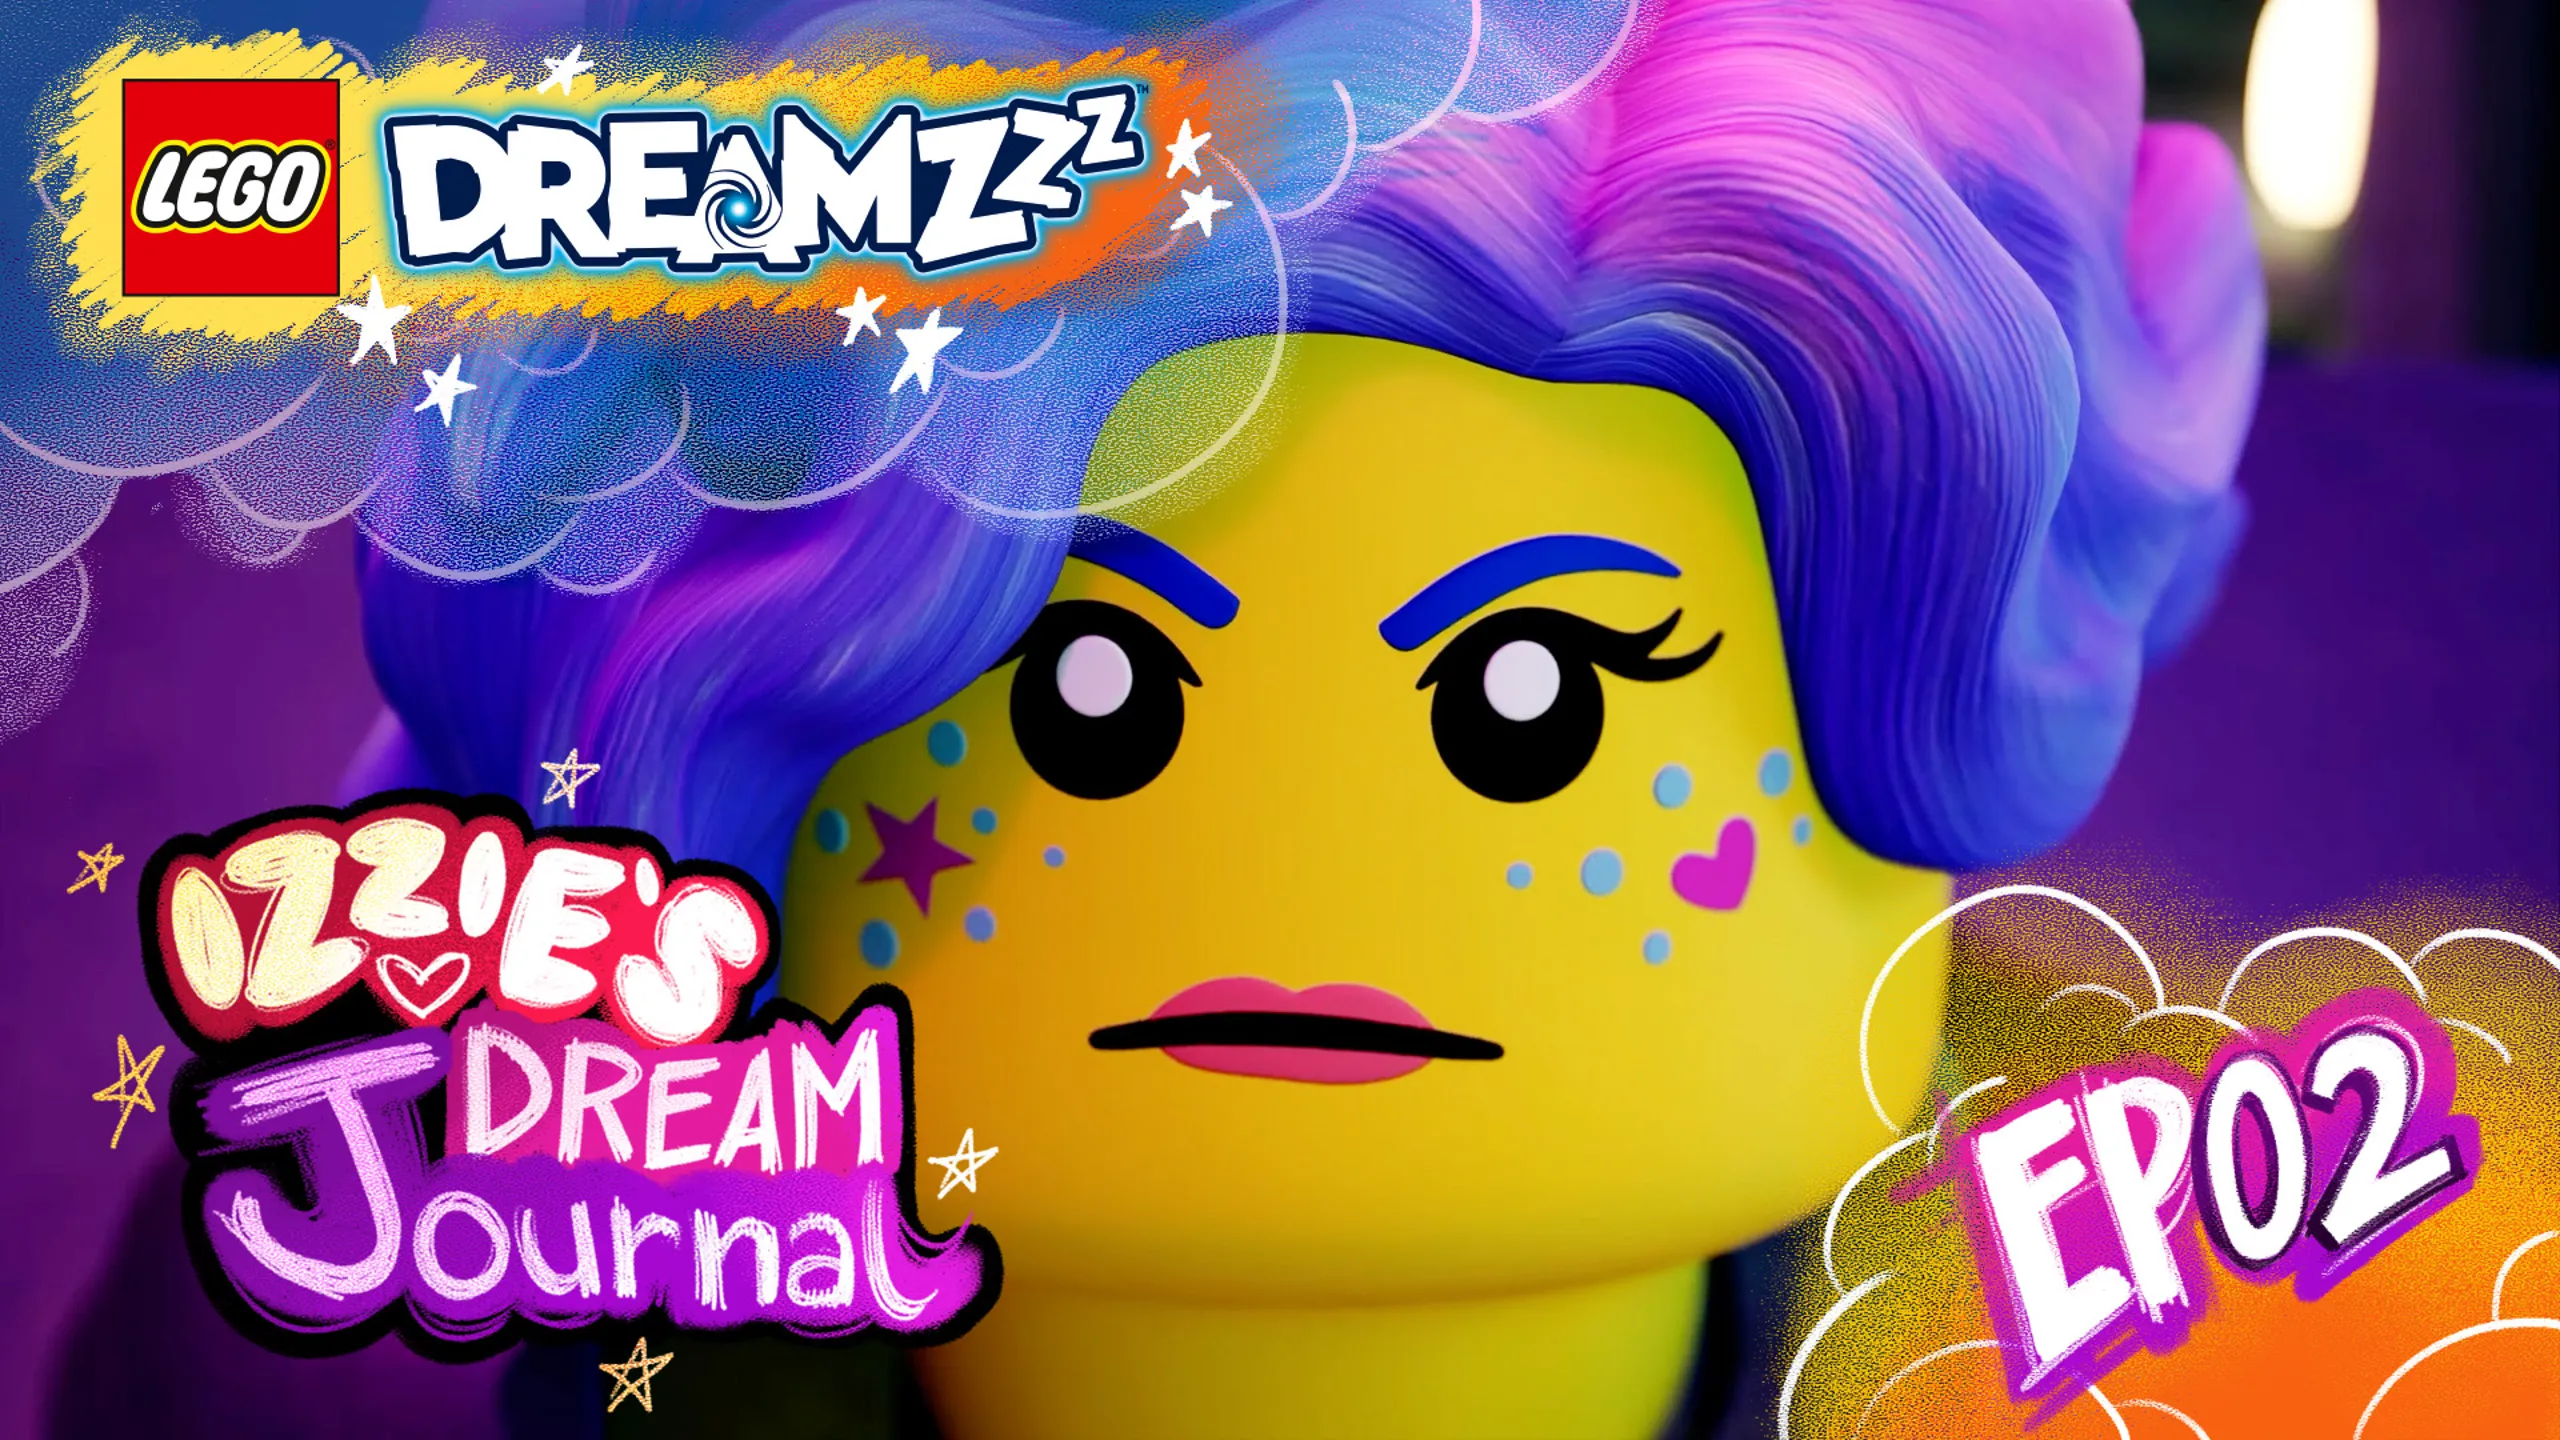 LEGO® DREAMZZZ - IZZIE'S DREAM Journal - EP02